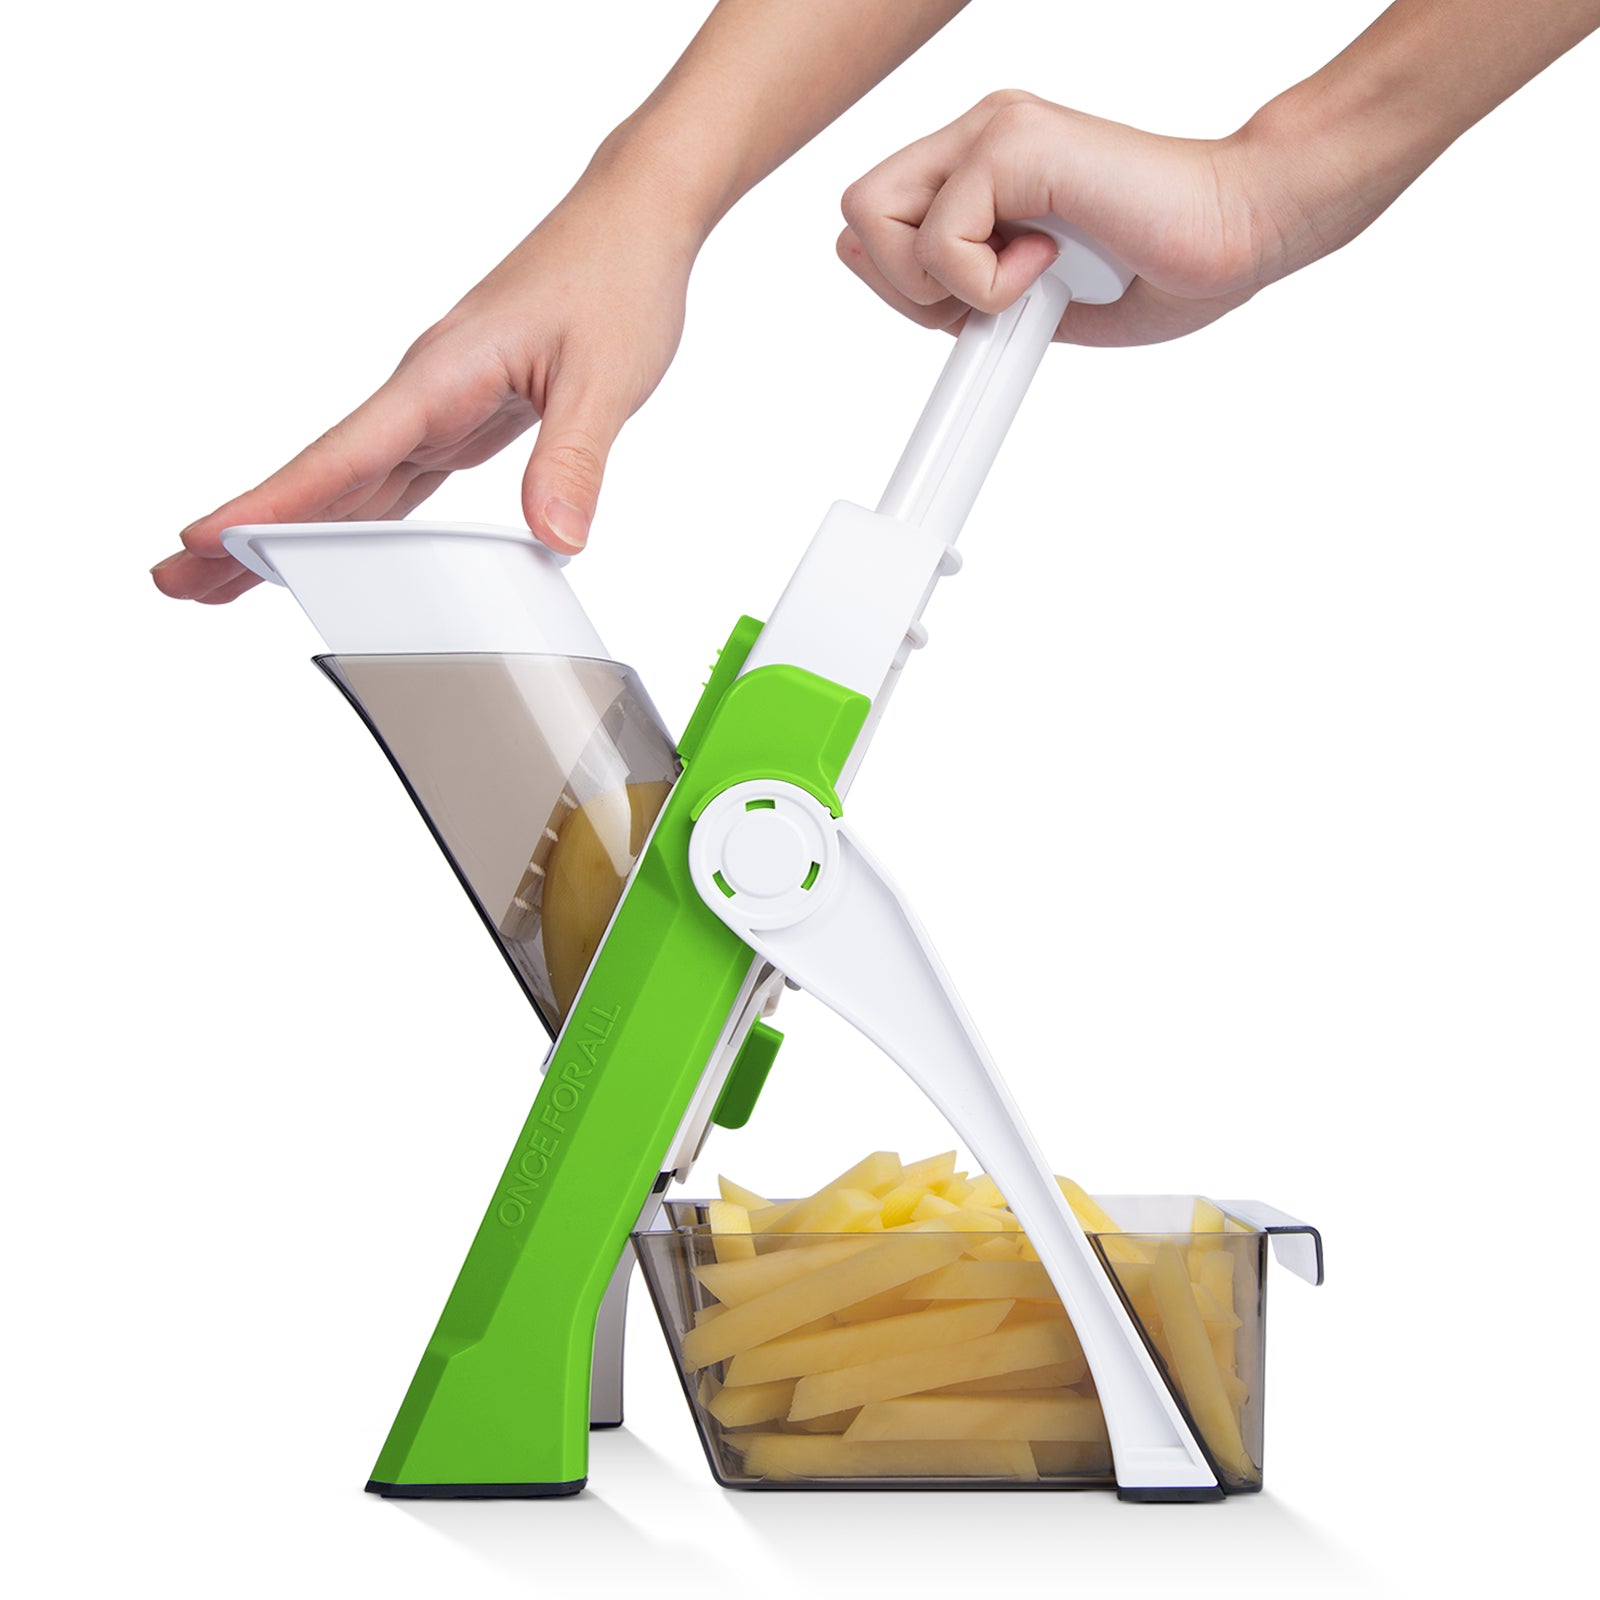 L-Link ONCE FOR ALL Mandoline Vegetable Slicer Adjustable